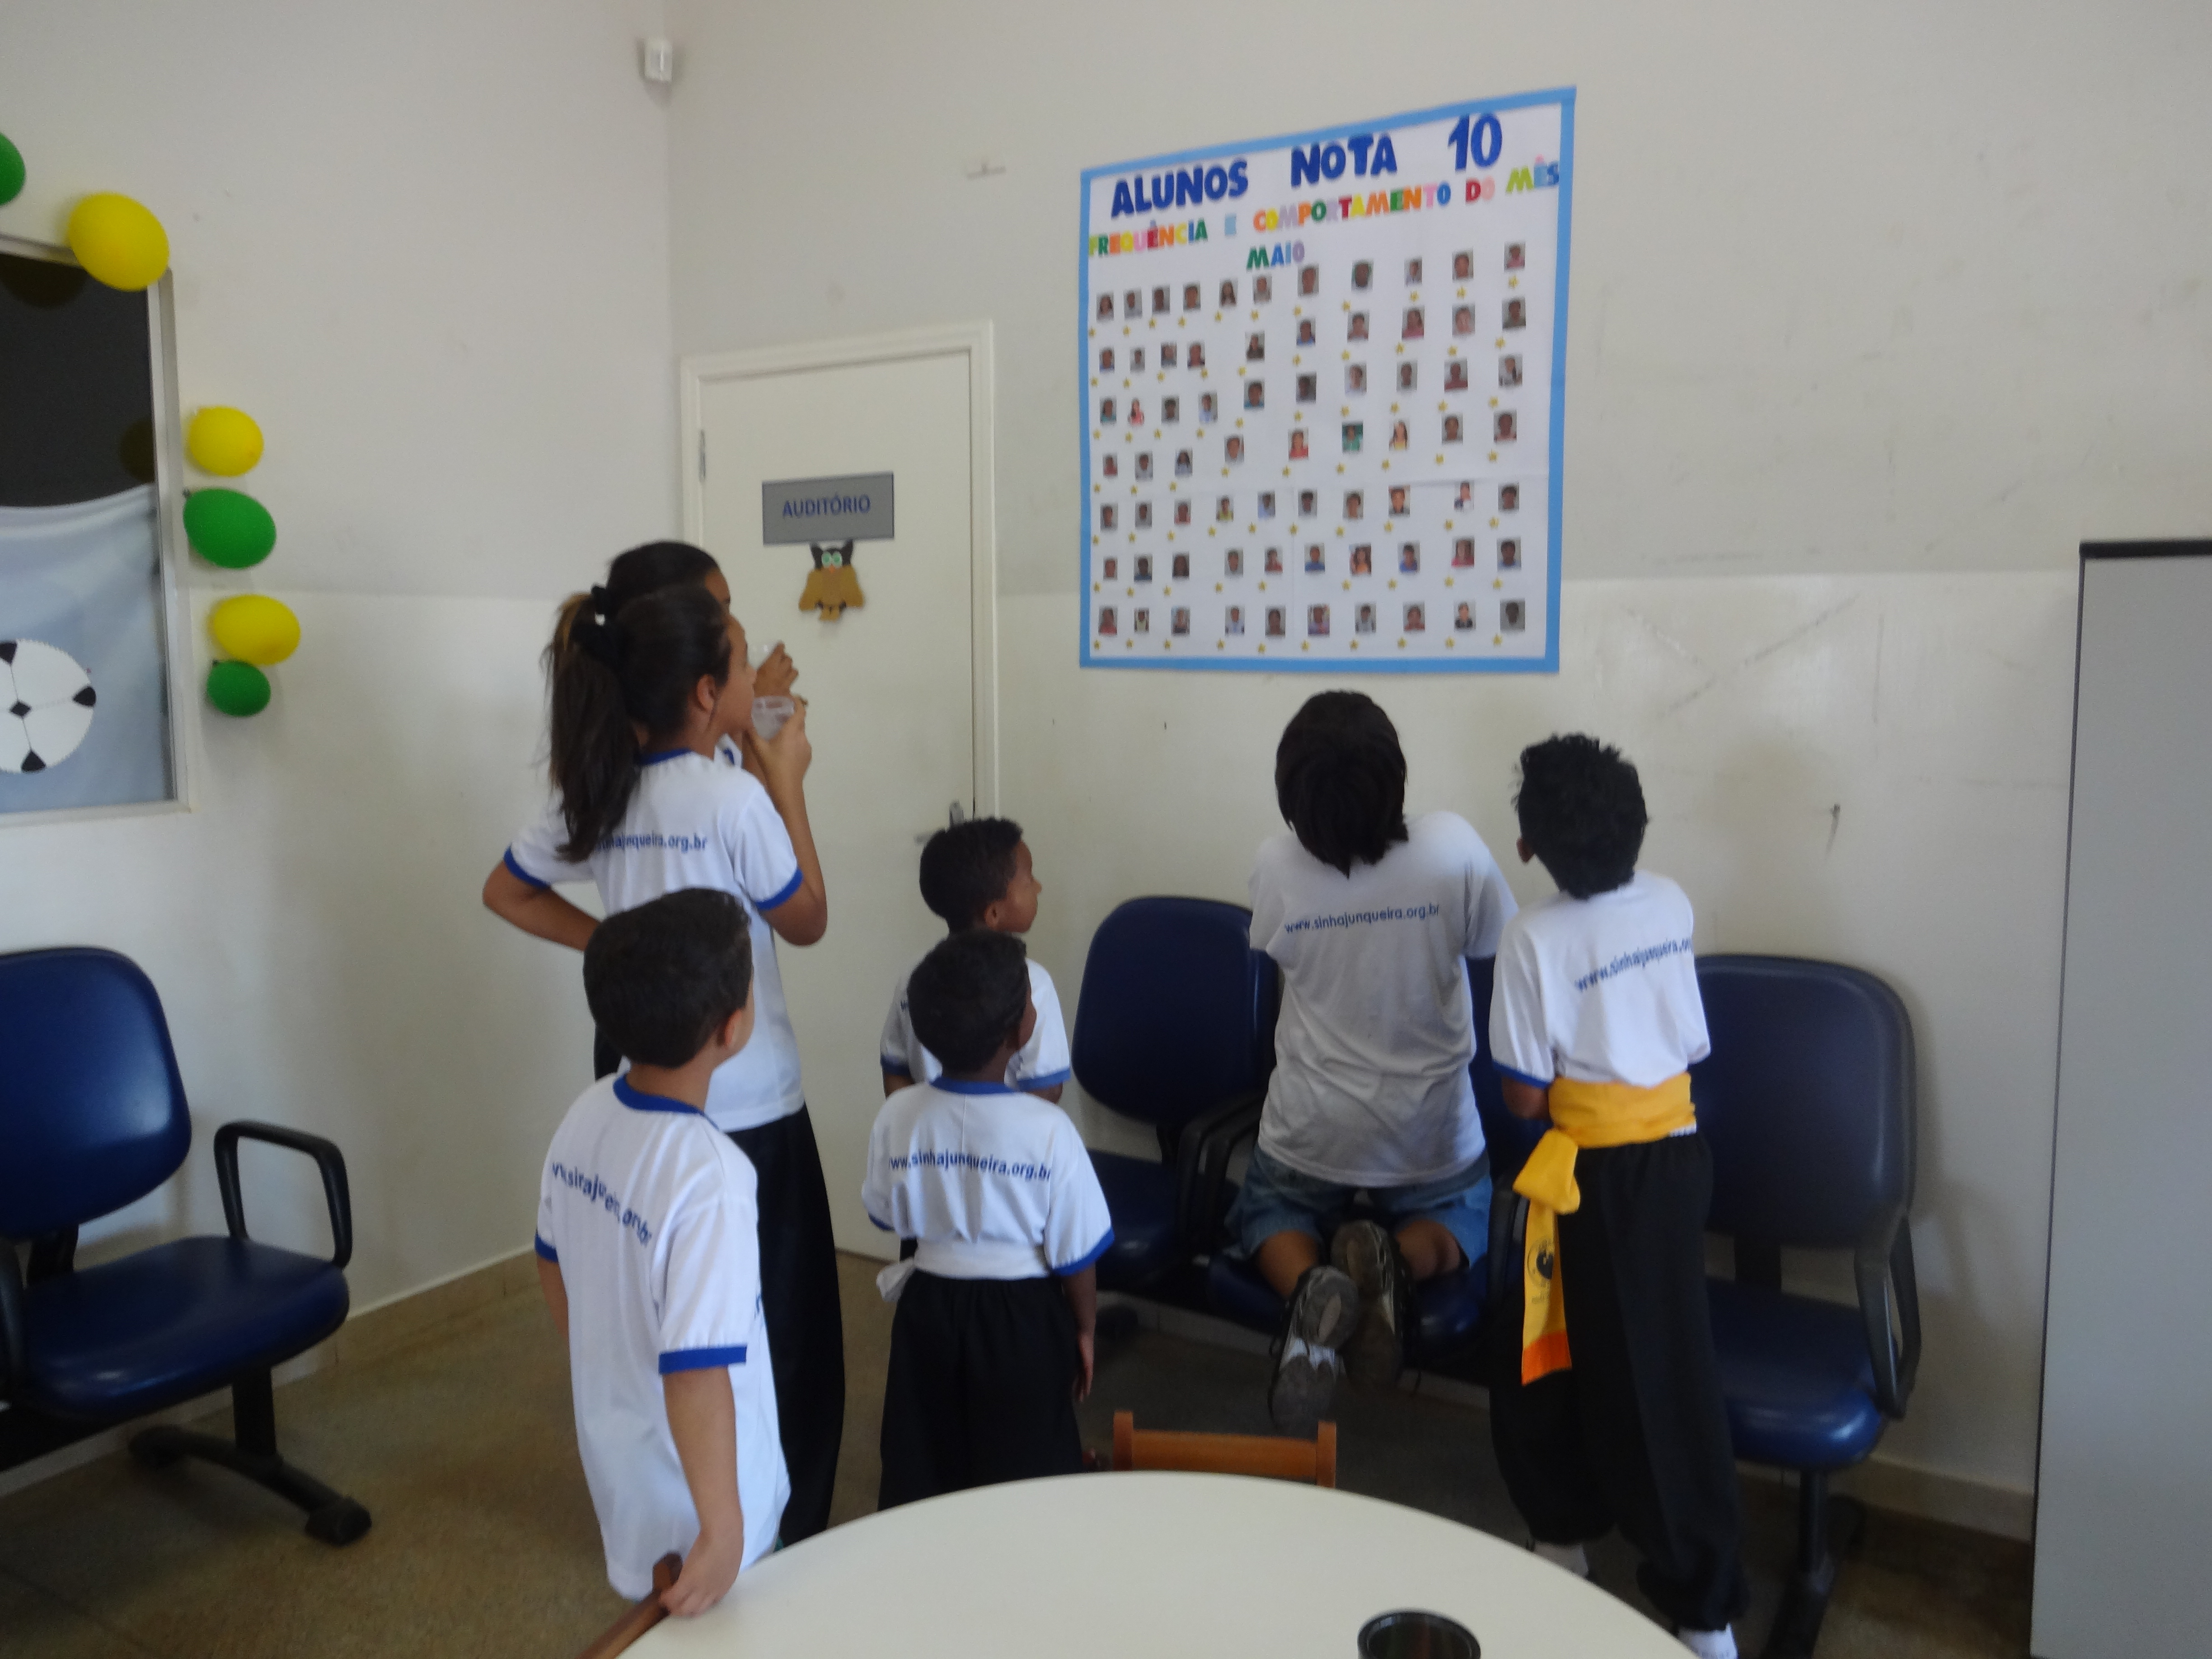 Fundação Sinhá Junqueira: com projeto “Aluno Nota 10”, estudantes são estimulados a não faltar às aulas. Pais e professores sentem o impacto positivo da iniciativa